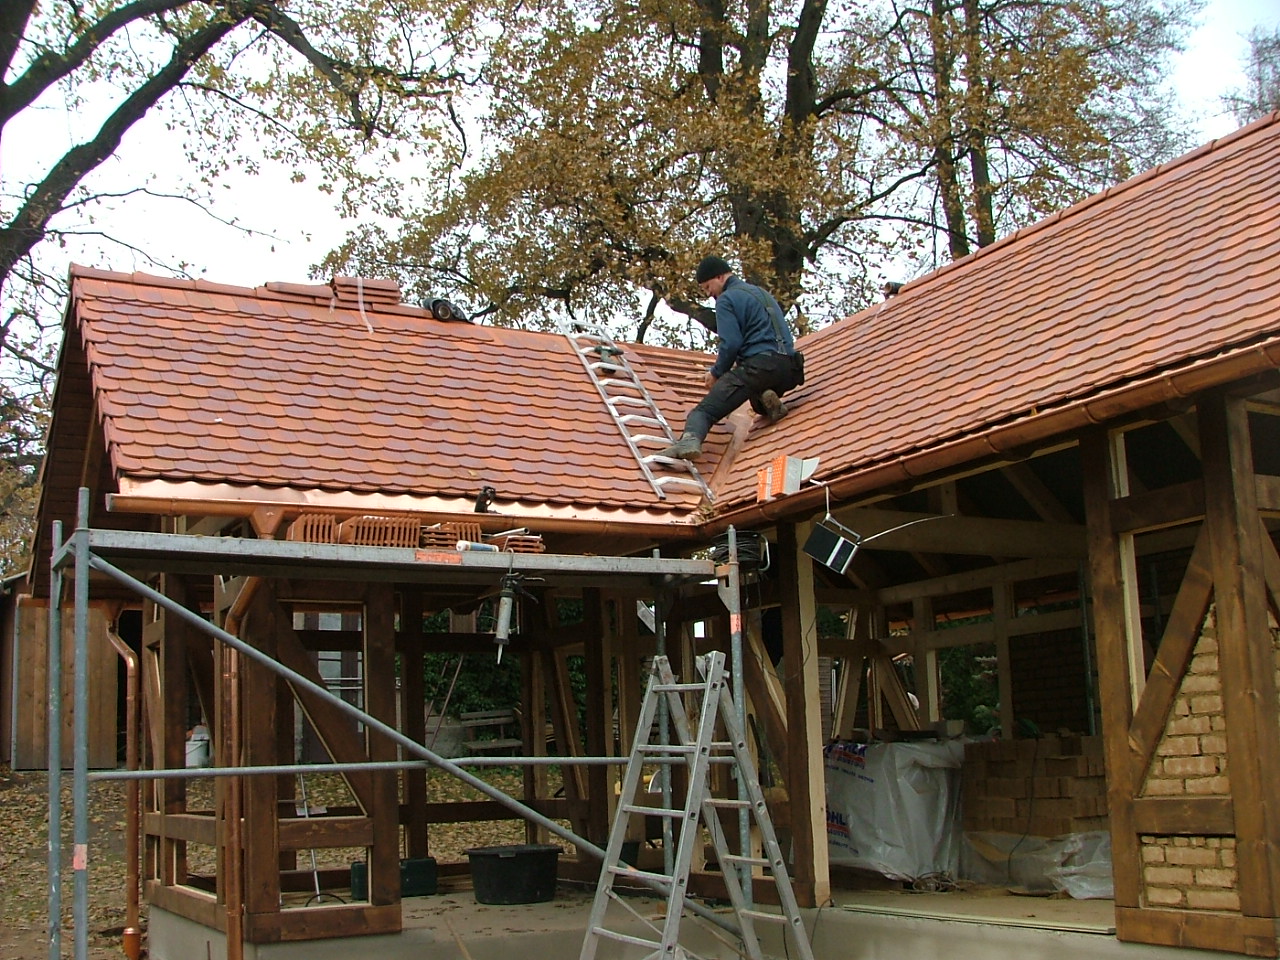 Gartenhaus mit Lehmsteinausfachungen